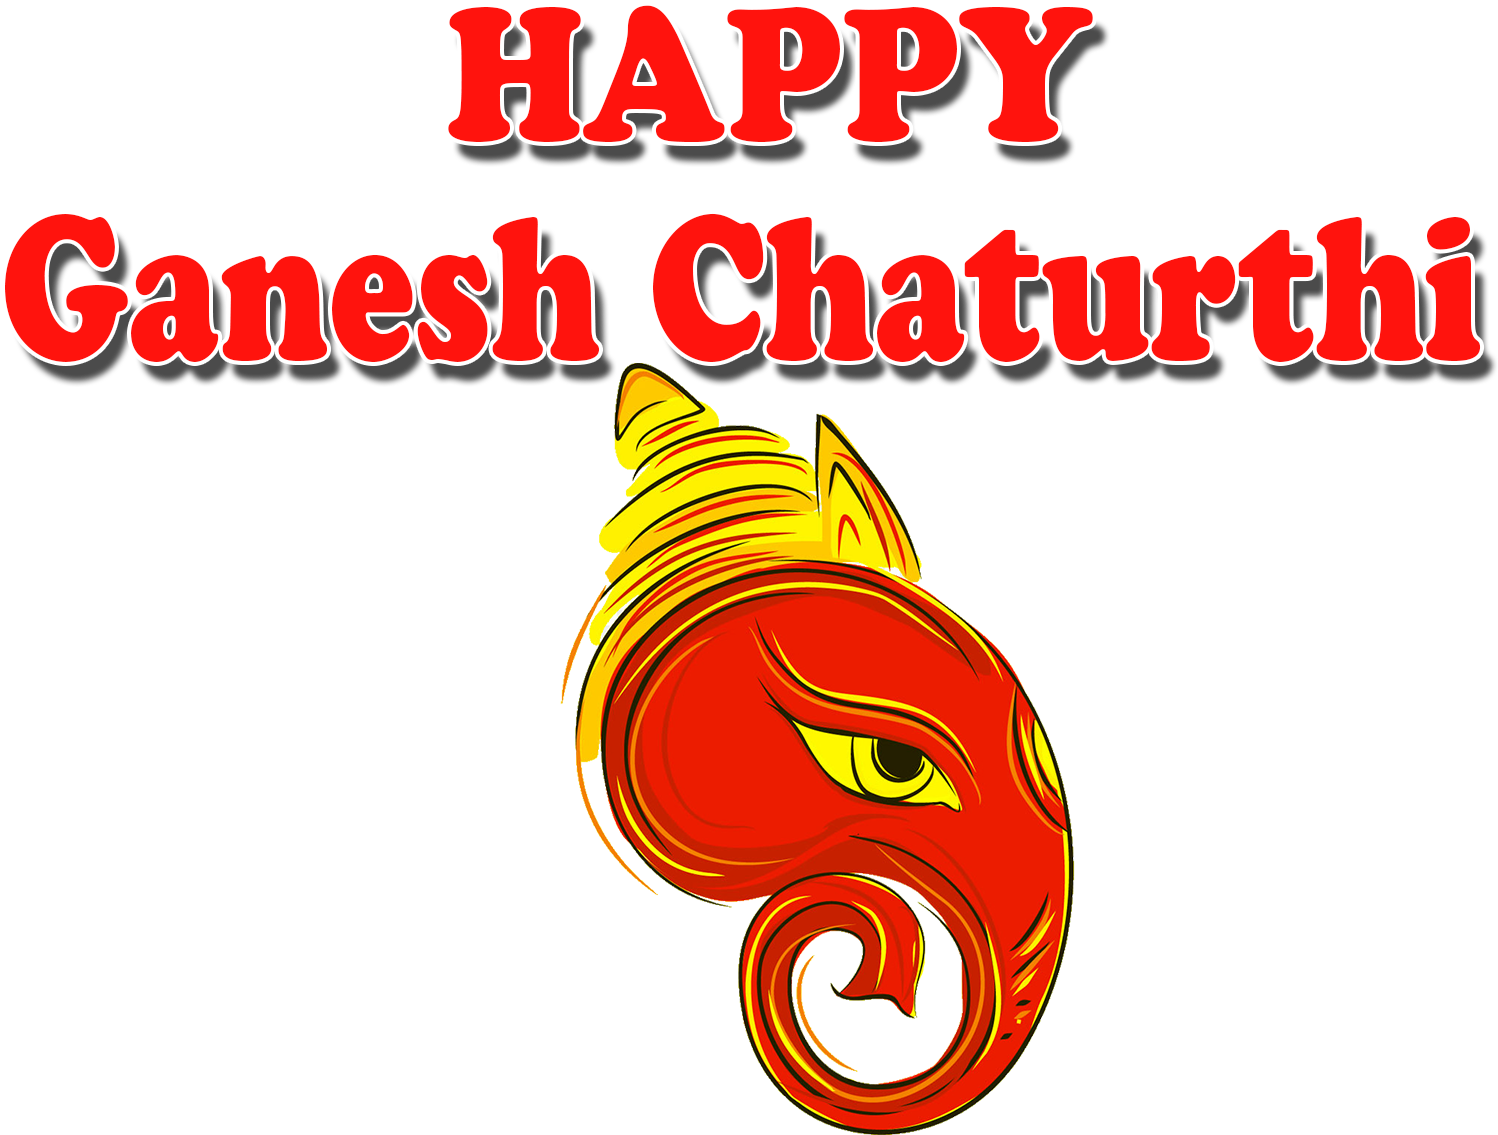 Ganesh Chaturthi 2018 Images - Ganesh Chaturthi Free Download (1920x1200), Png Download